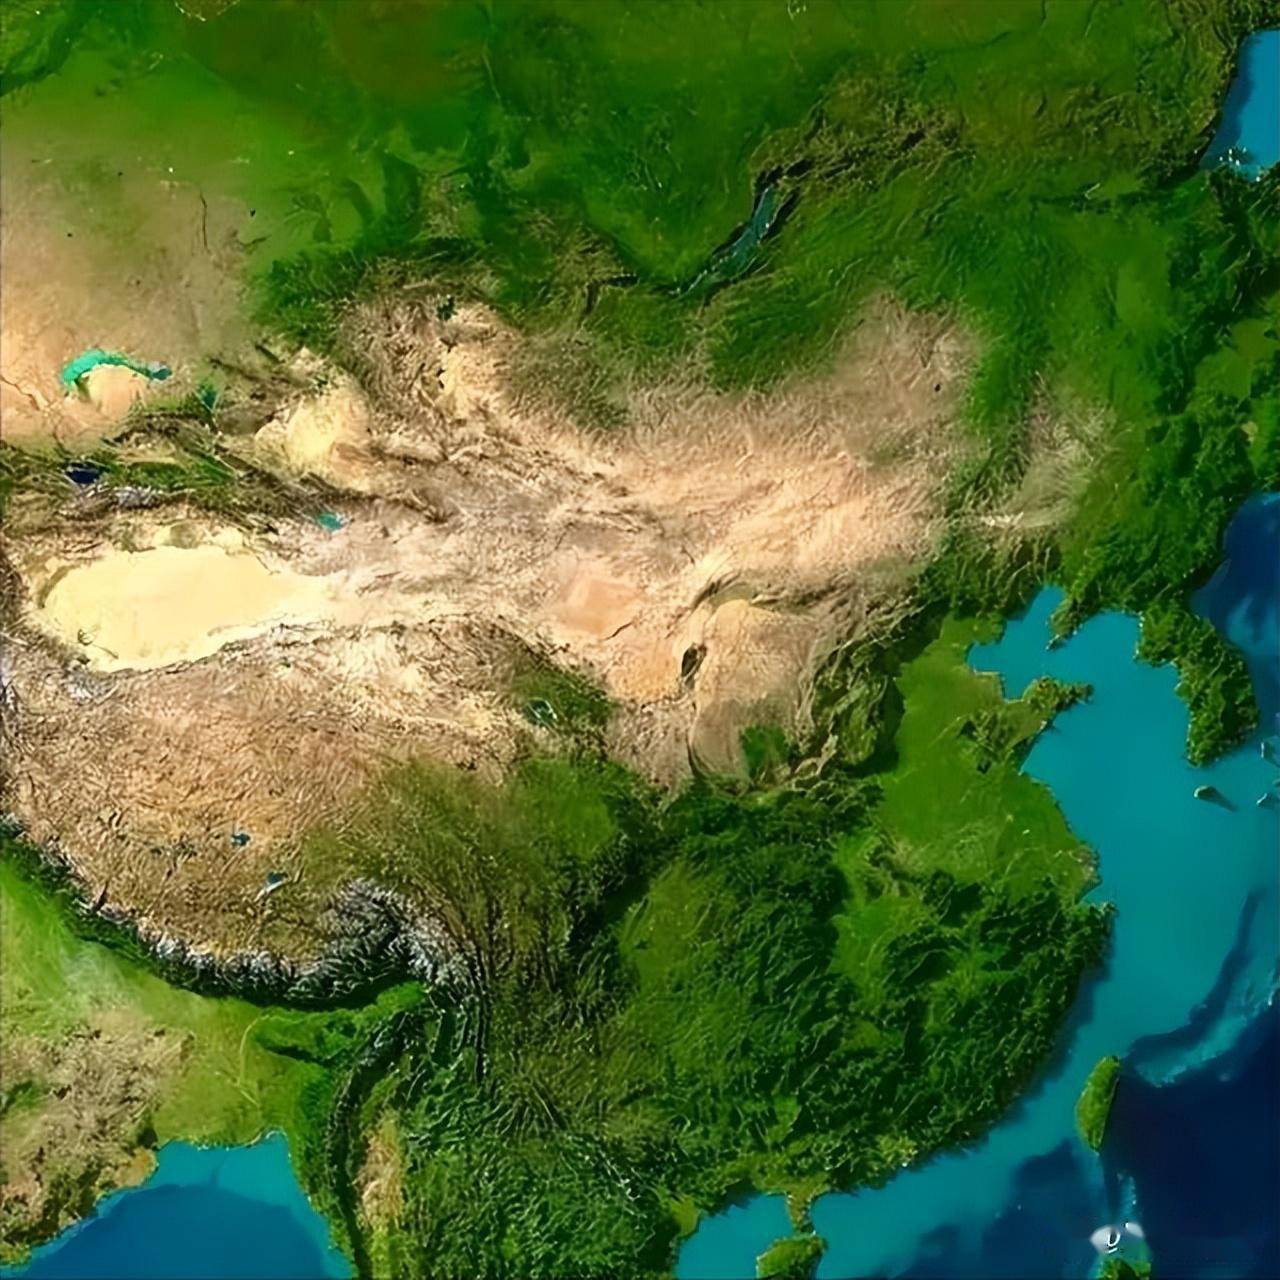 中国七大区域版图图片